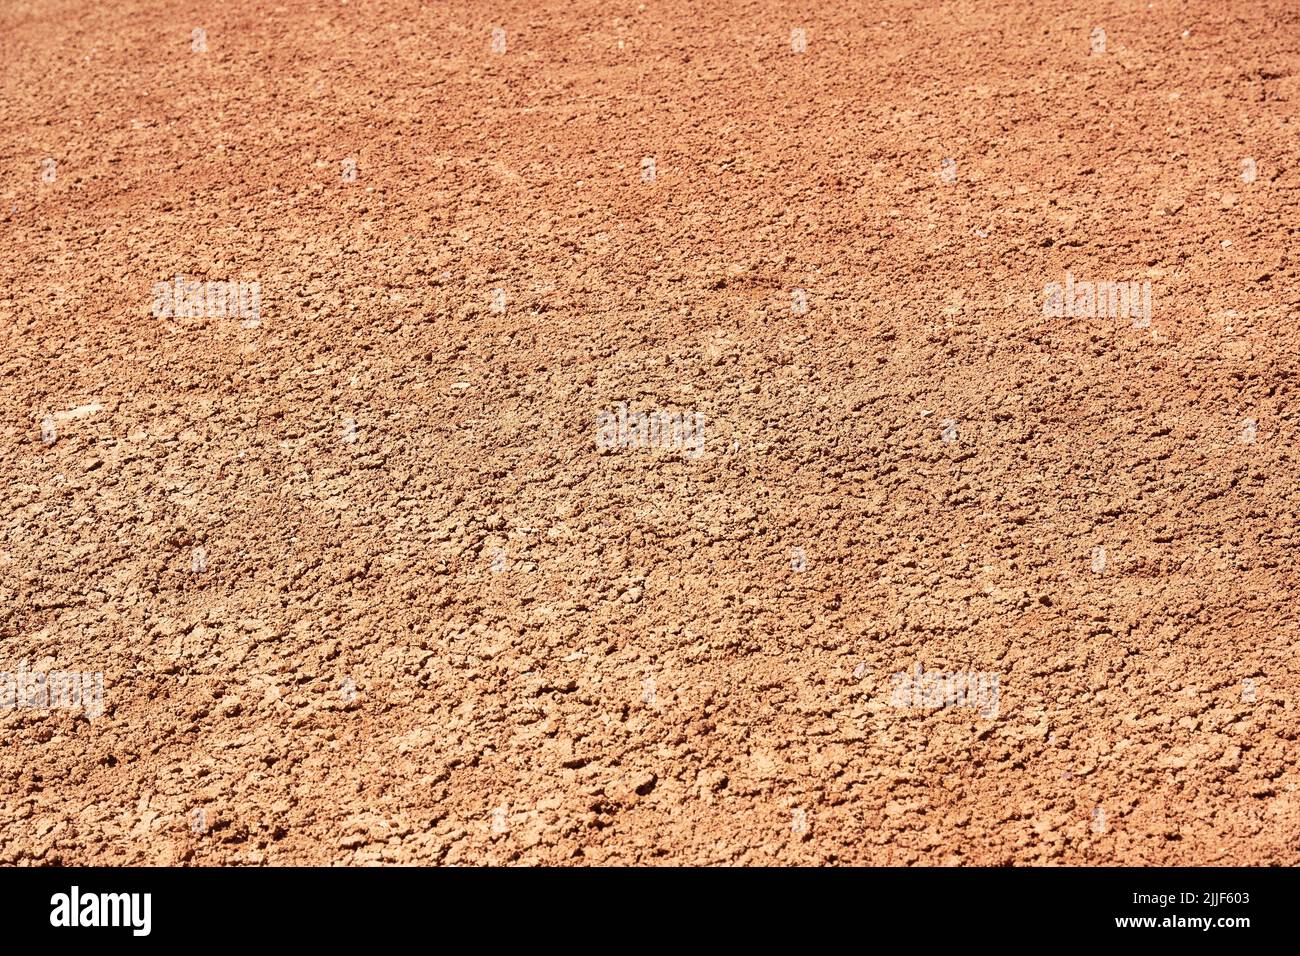 Textura de fondo del suelo anaranjado seco. Fondos abstractos de naturaleza Foto de stock